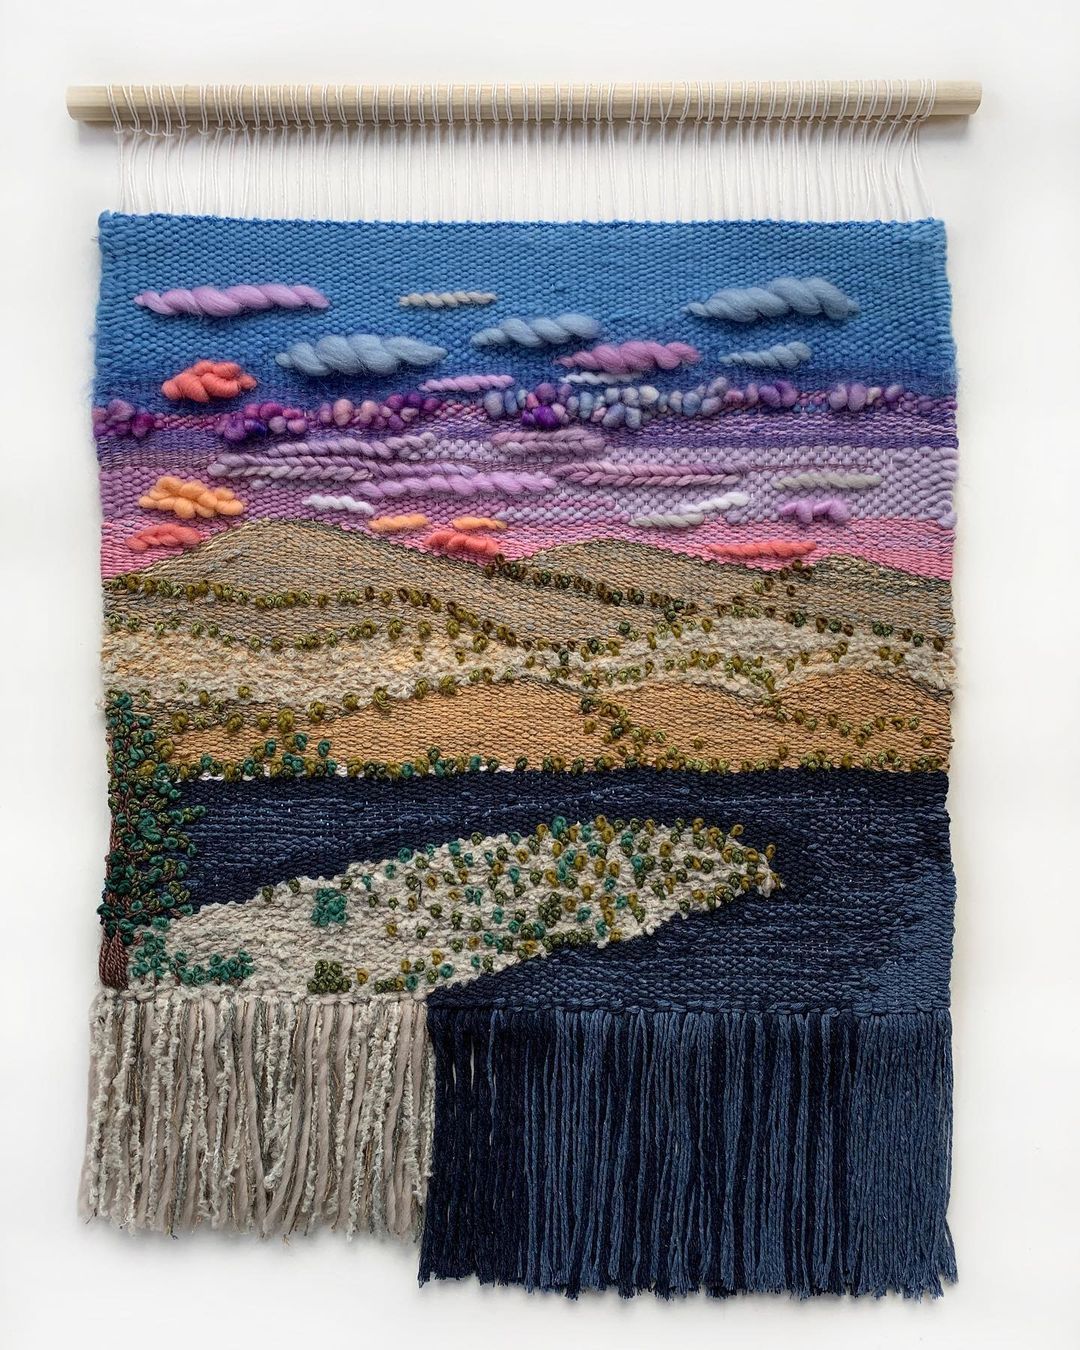 Weaving landscape art by Adrienne Lee